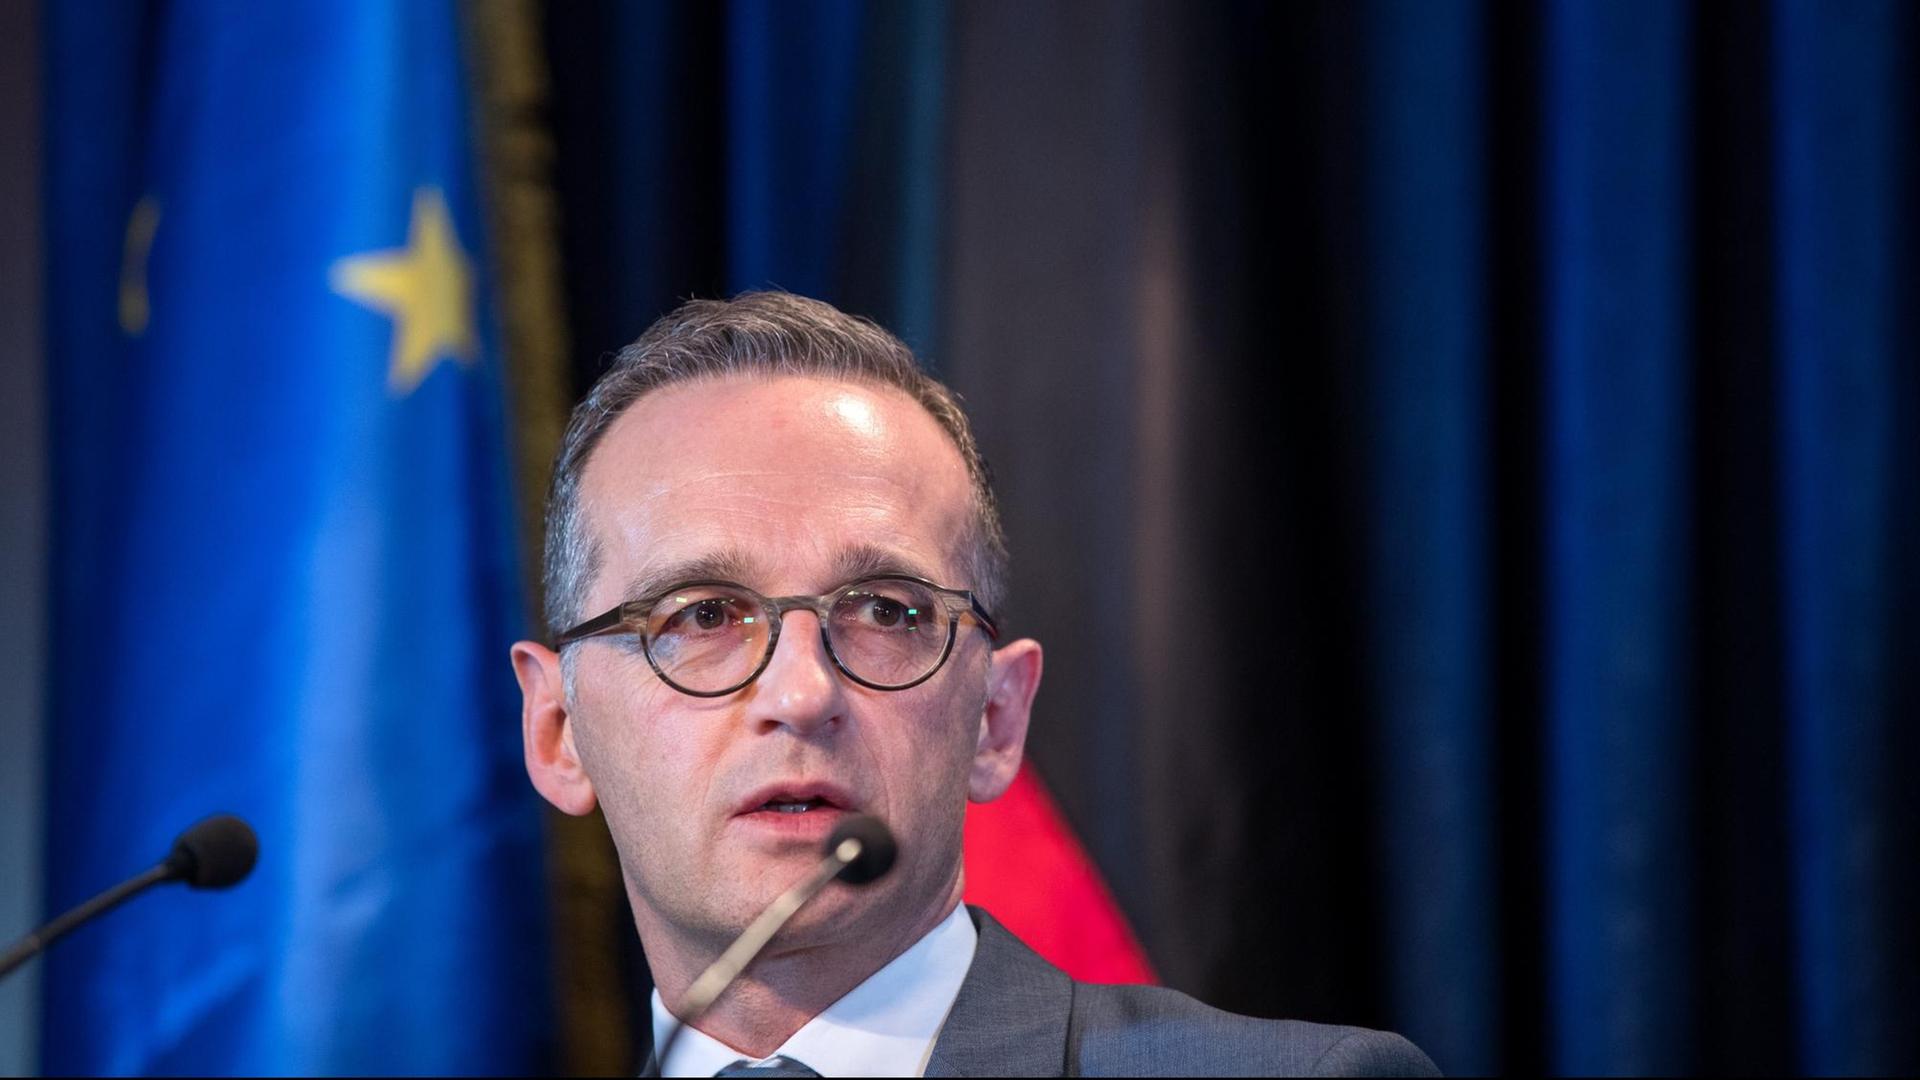 Bundesaußenminister Heiko Maas, SPD, bei einer Pressekonferenz, hinter ihm die Flaggen der EU und Deutschlands.